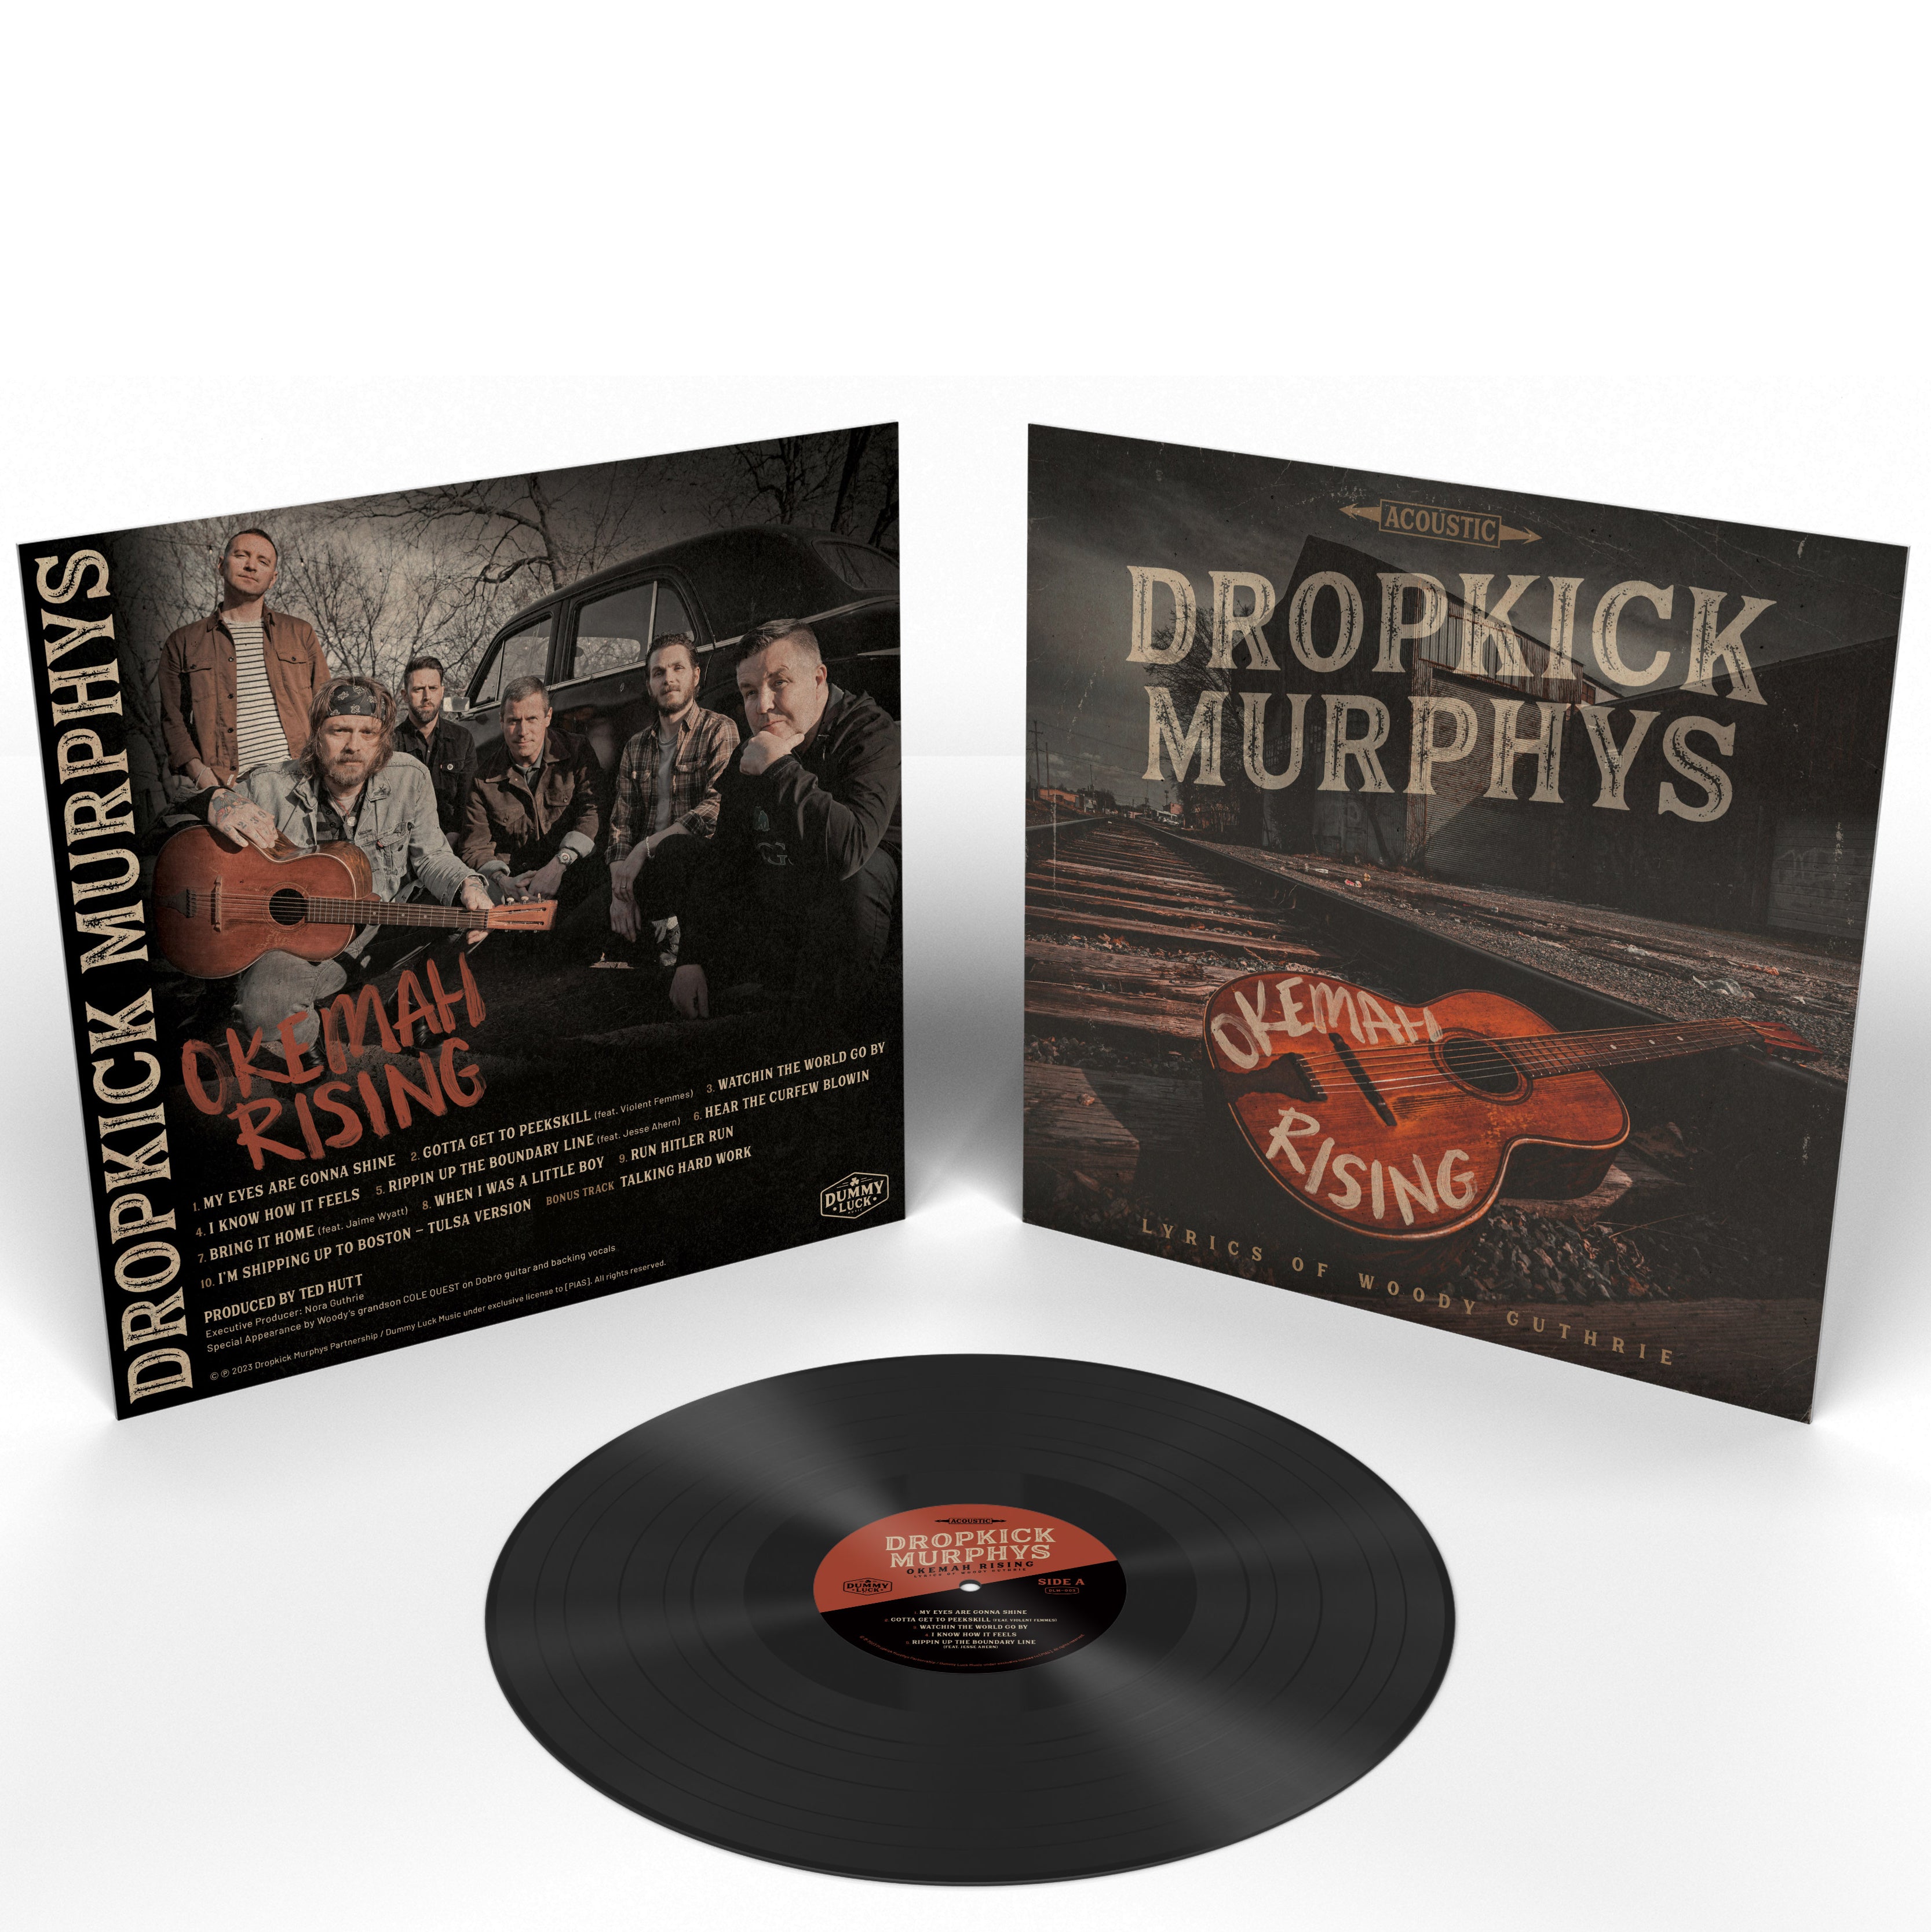 Dropkick Murphys - Okemah Rising: Vinyl LP